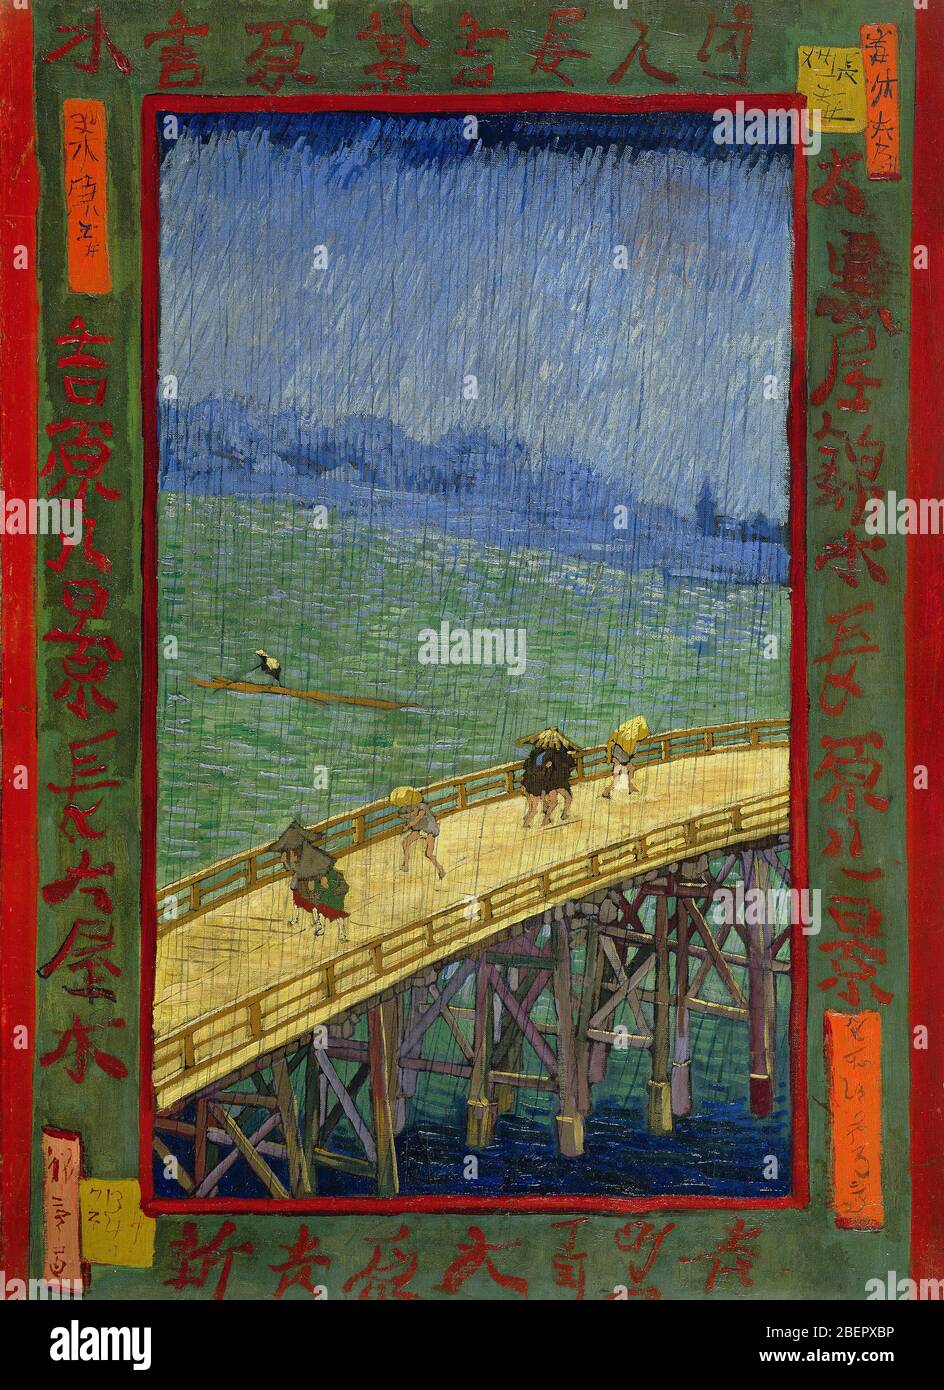 Serie Japonaise (dopo Utagawa Hiroshige) : il Ponte sotto la pioggia di Van Gogh 1887. Museo Van Gogh, Amsterdam Foto Stock